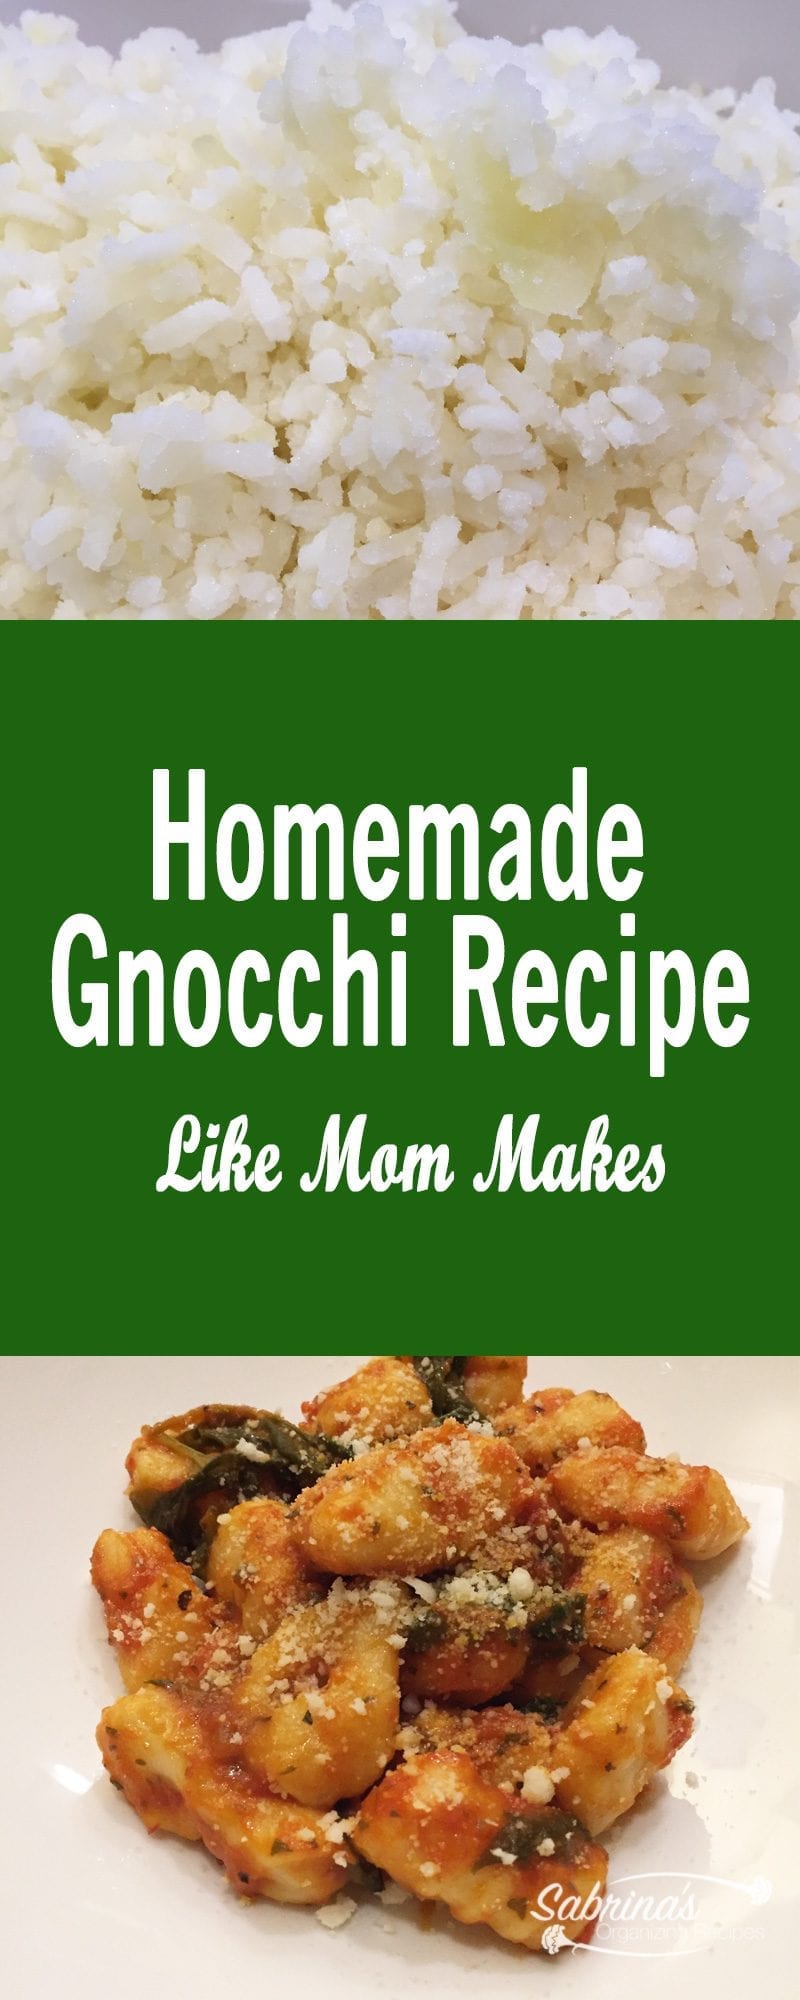 Homemade Gnocchi Recipe Like Mom Makes